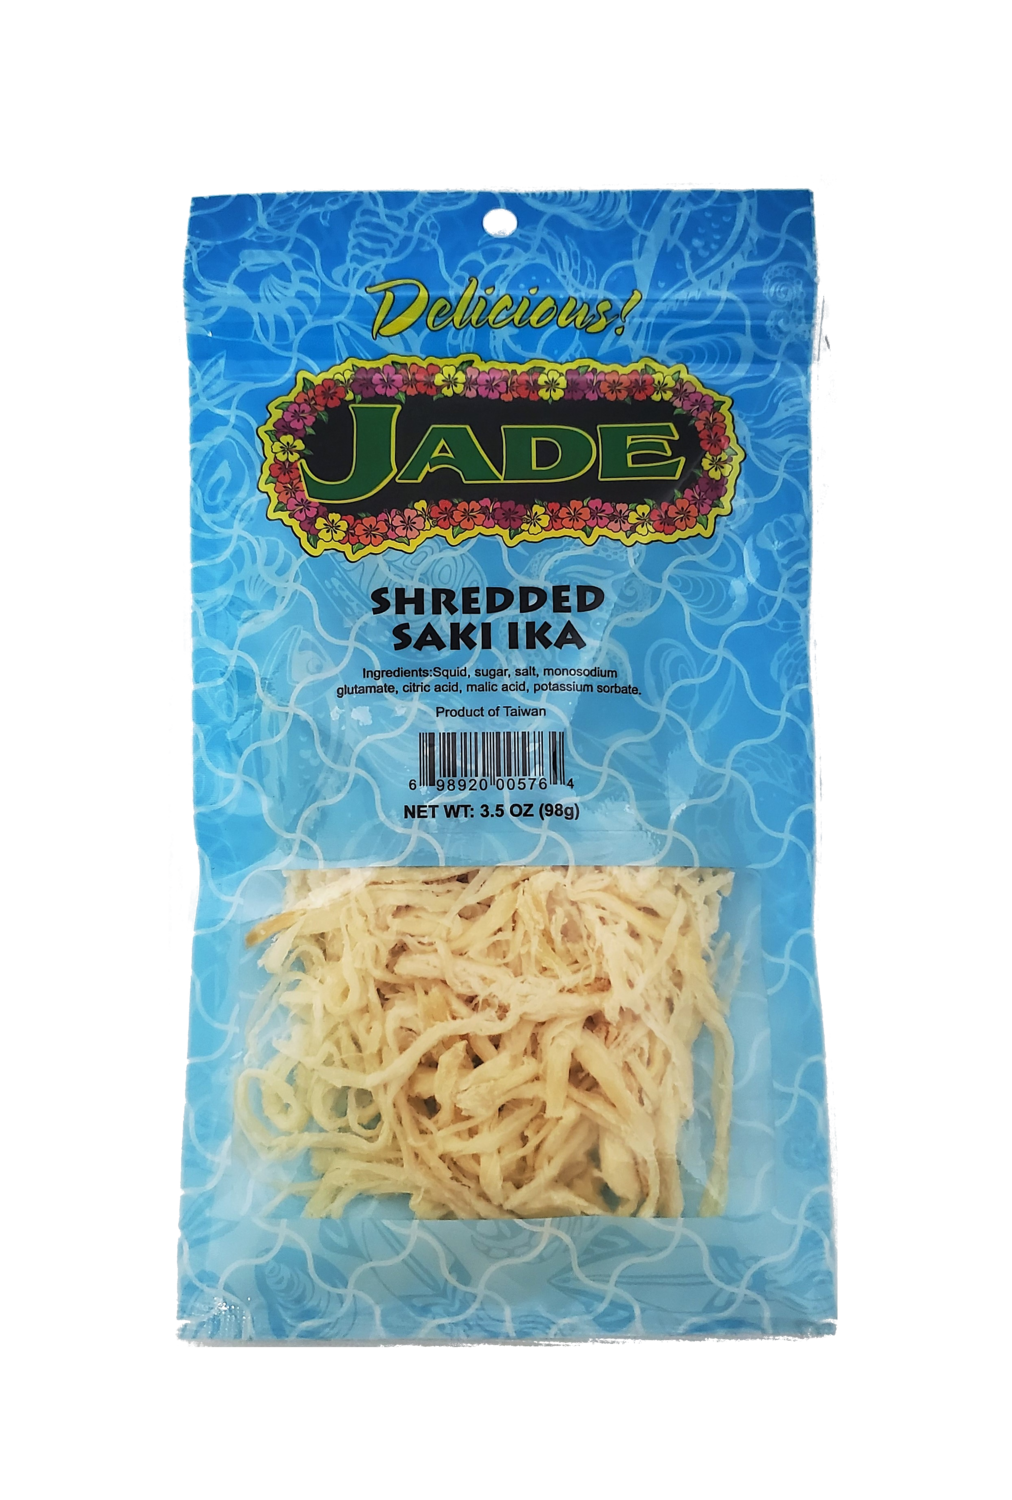 Jade Shredded Saki Ika 3.5 oz (NOT FOR SALE TO CALIFORNIA)